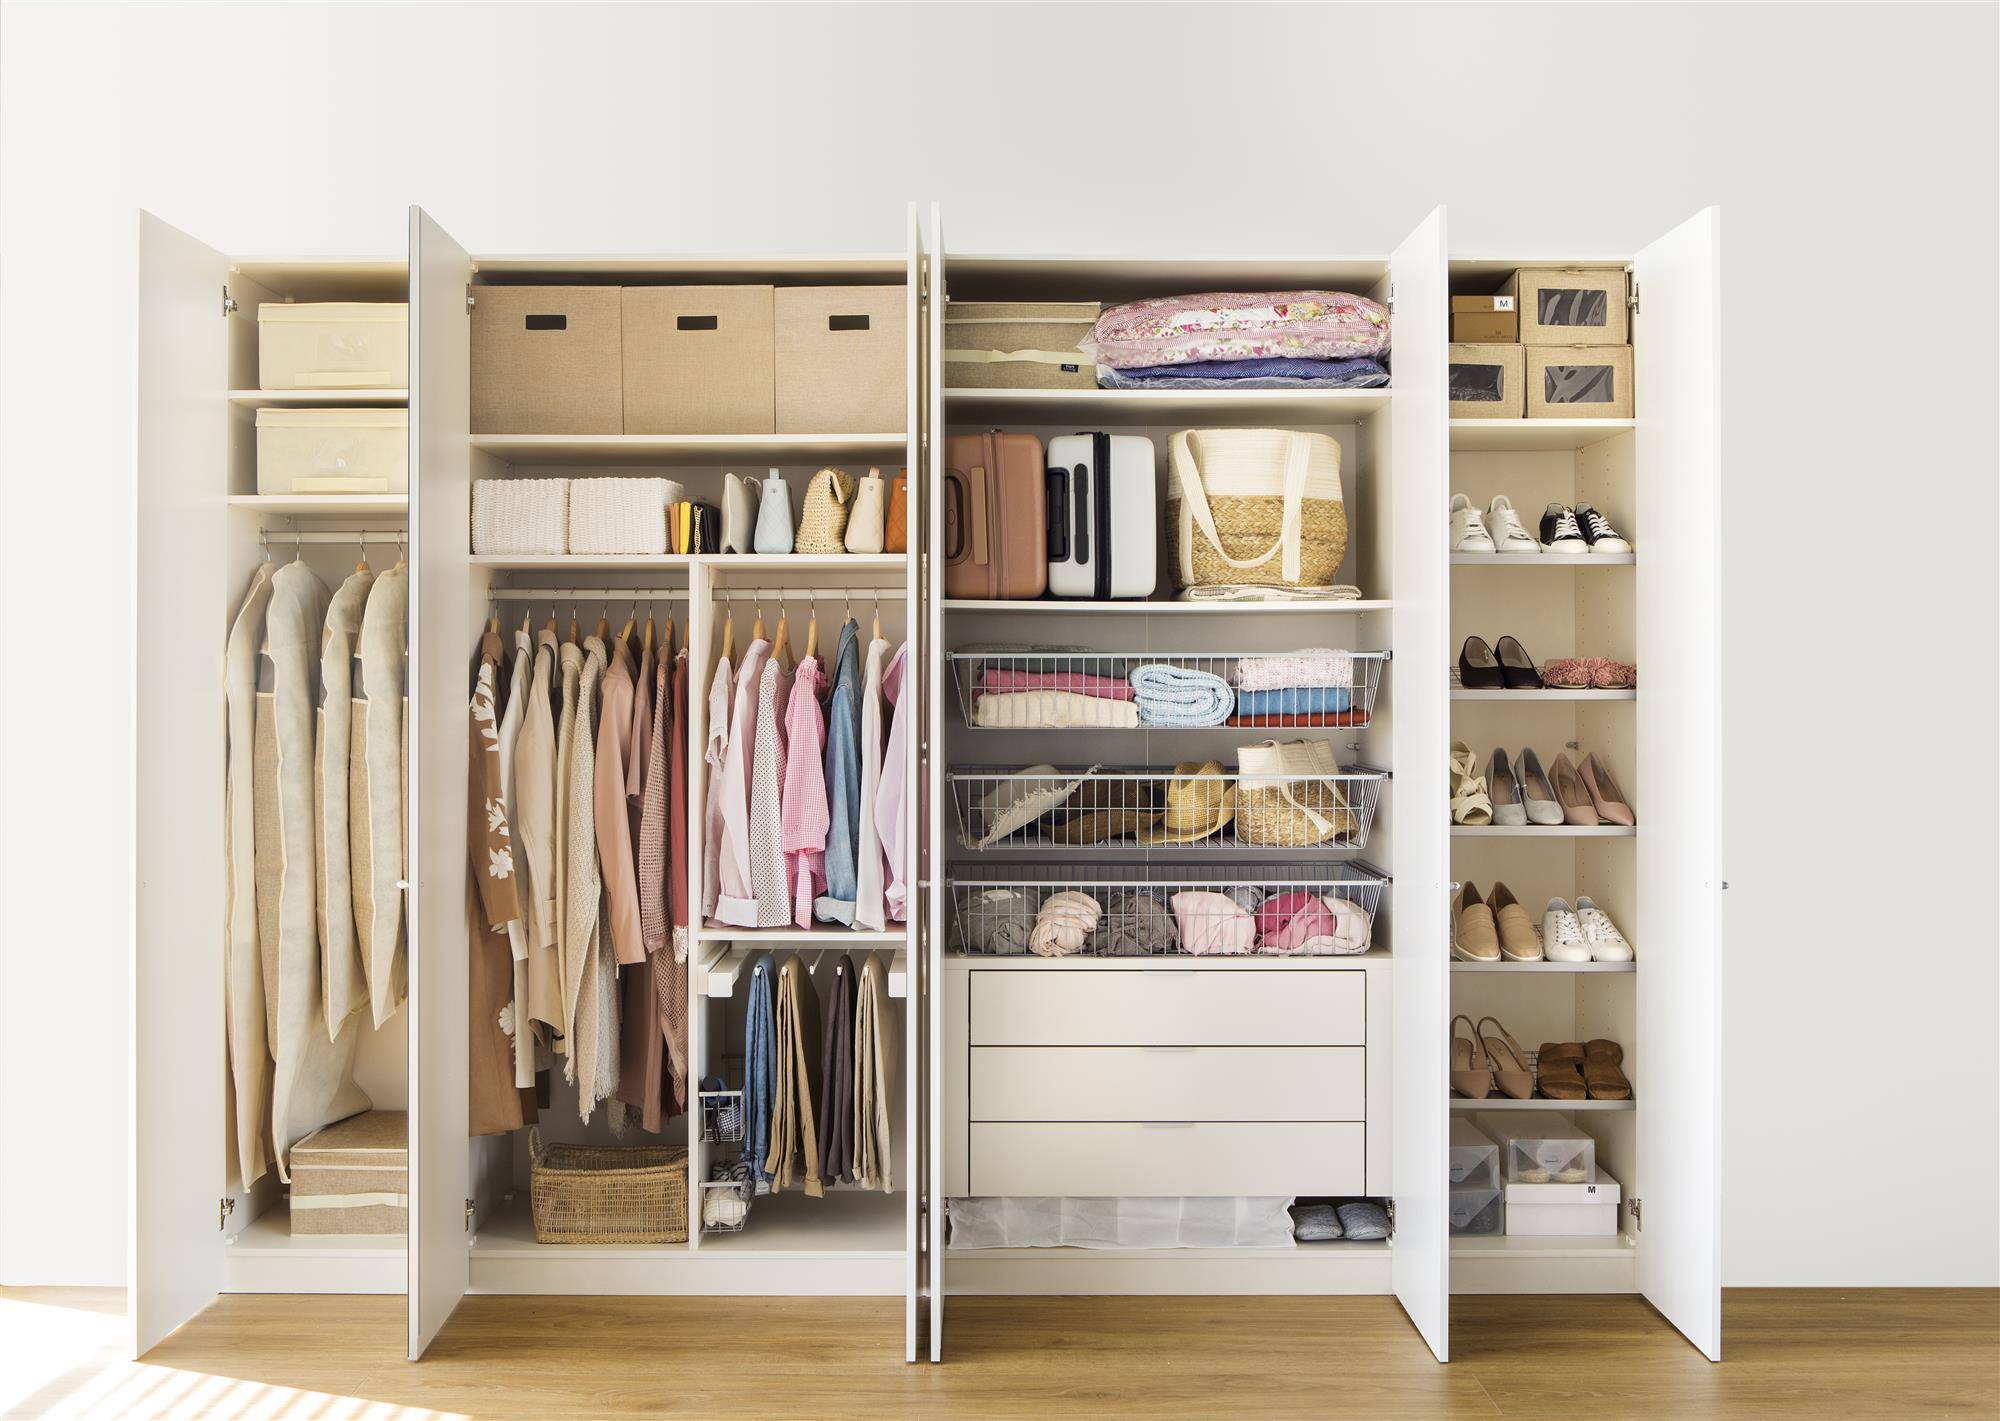 Interior de un armario con la ropa ordenada y clasificada